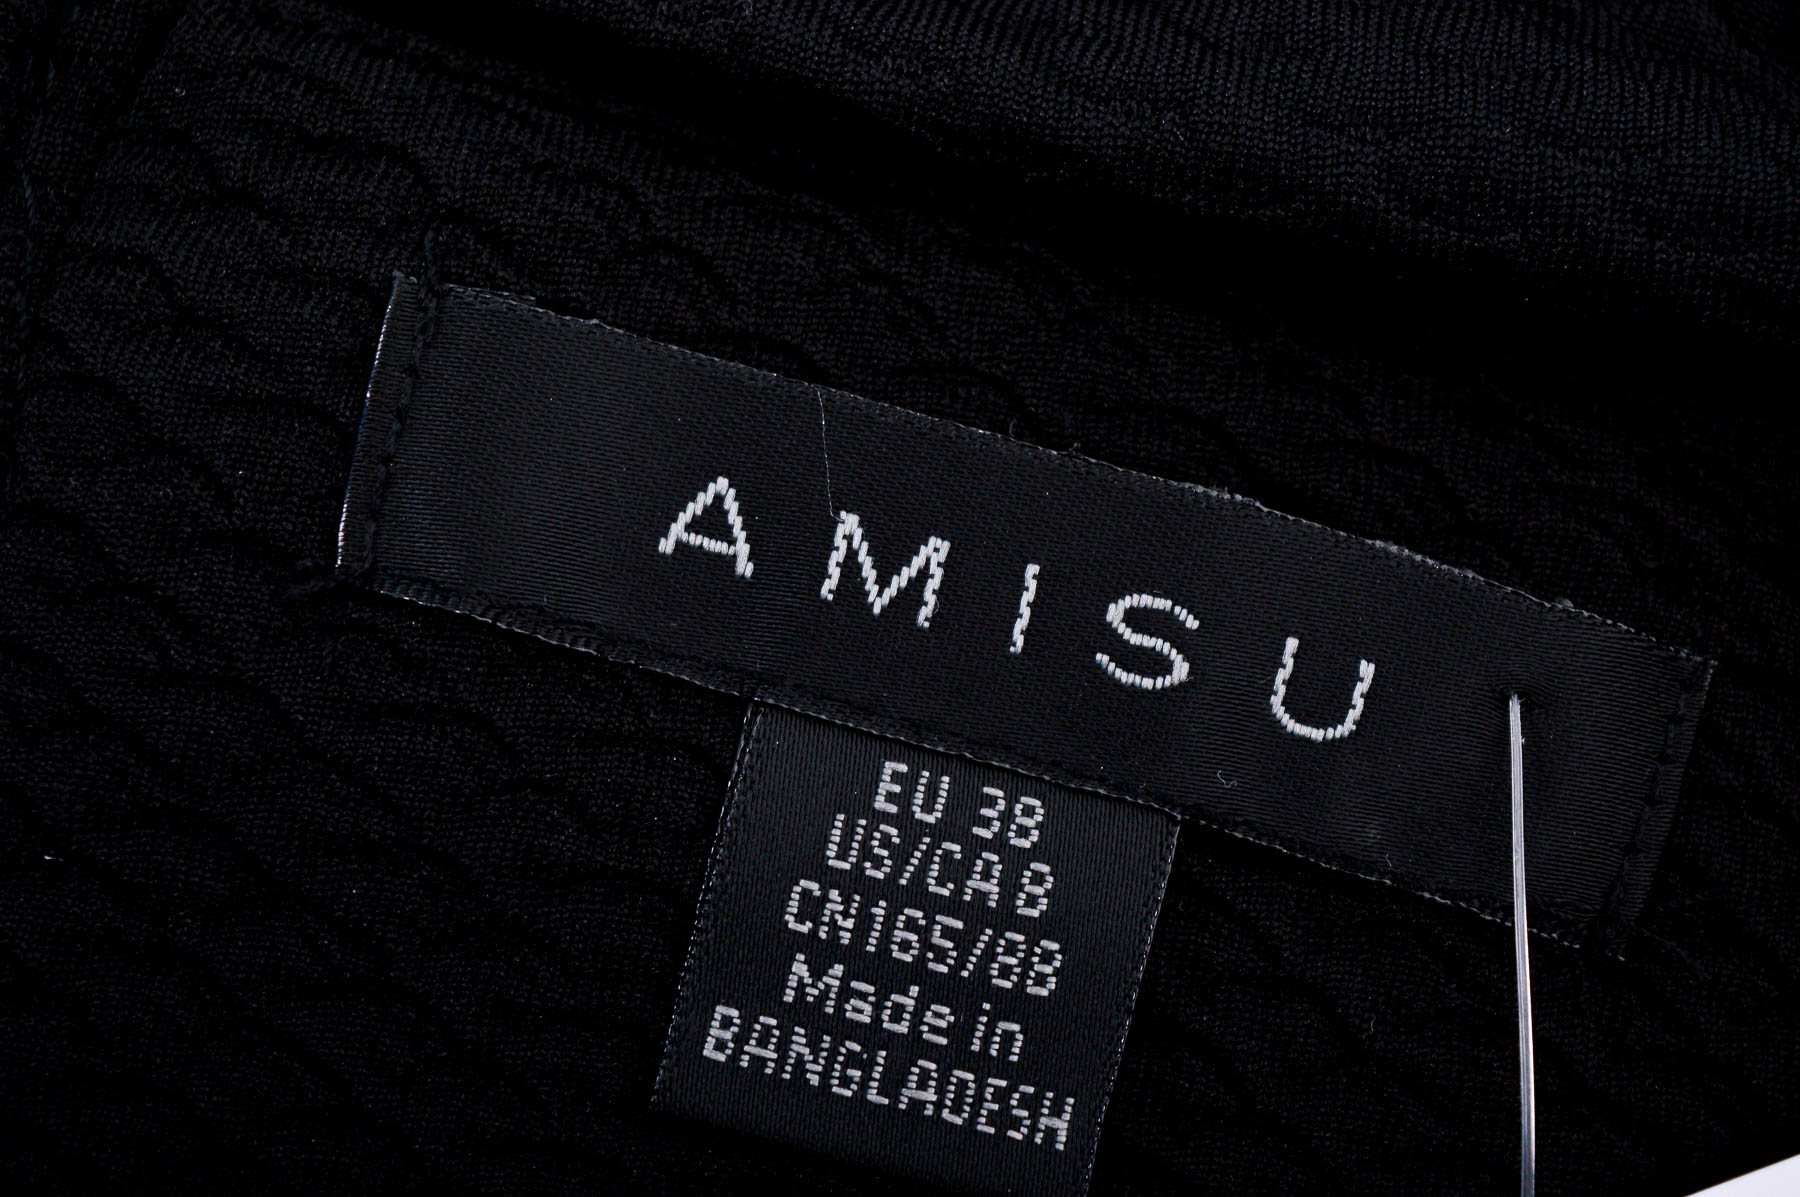 Φούστα - AMISU - 2